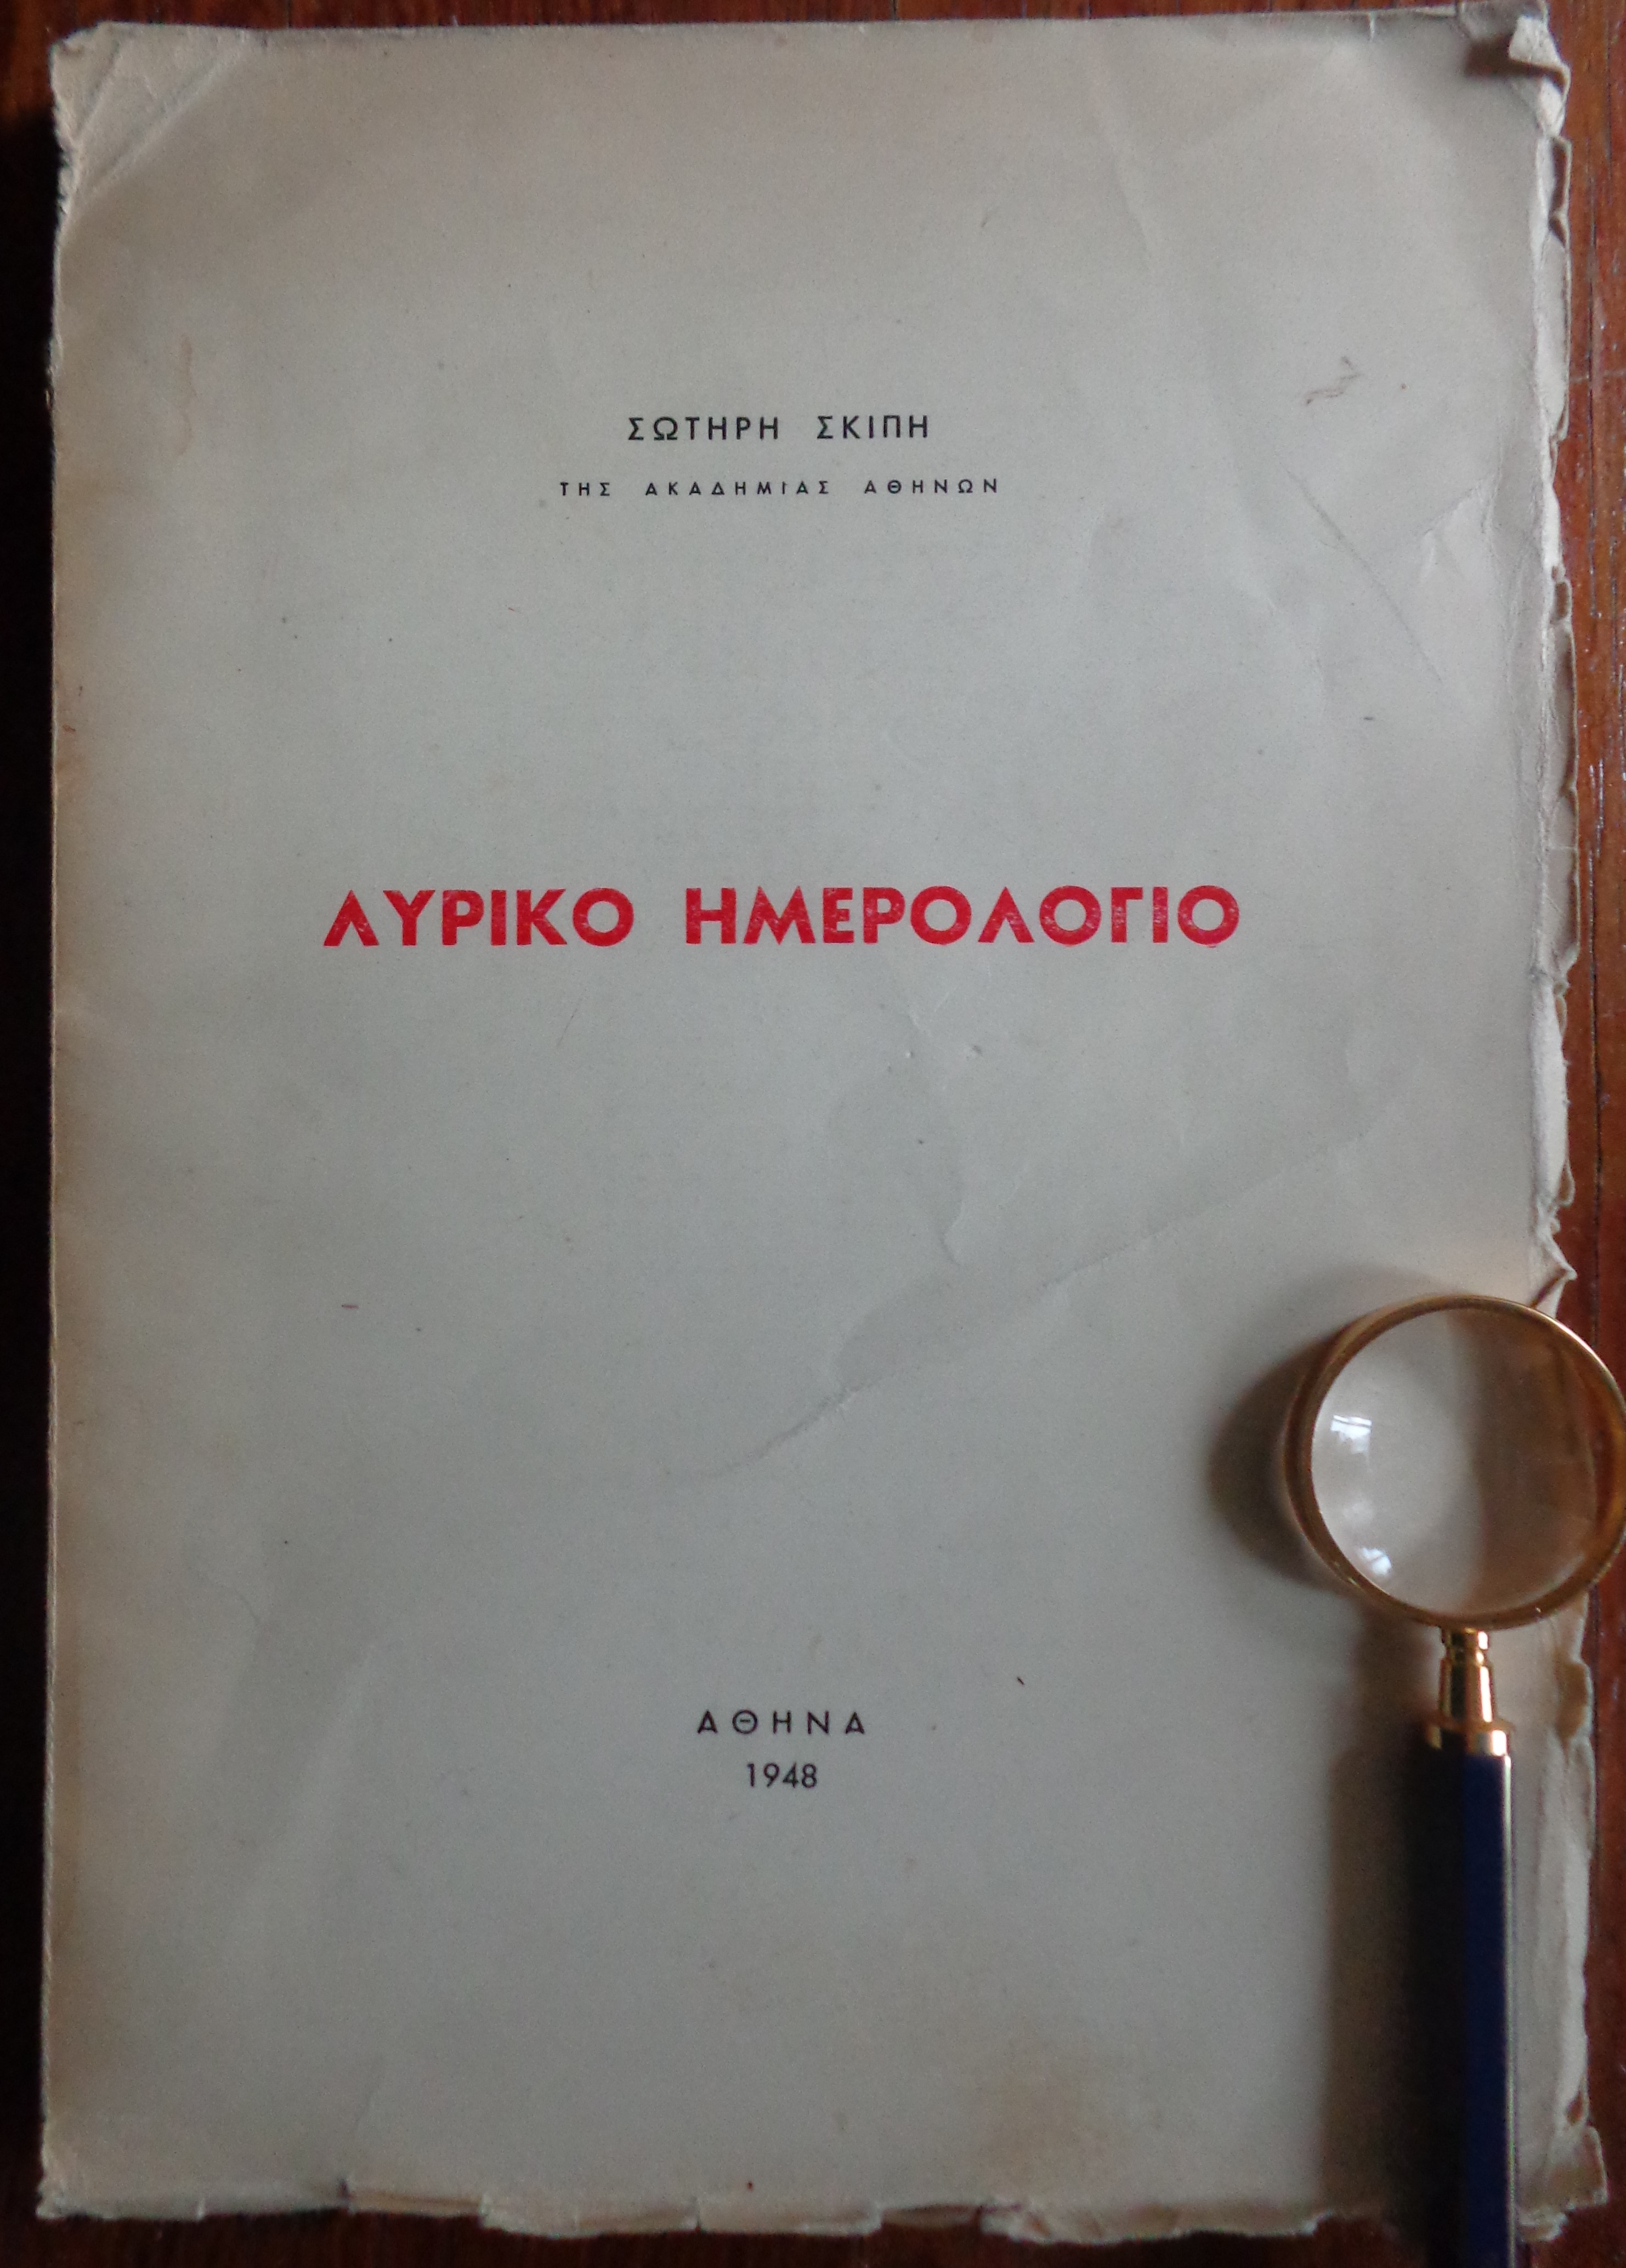 ΣΩΤΗΡΗΣ ΣΚΙΠΗΣ Λυρικό Ημερολόγιο ΠΡΩΤΗ ΕΚΔΟΣΗ, 1948 Αριθμημένο αντίτυπο